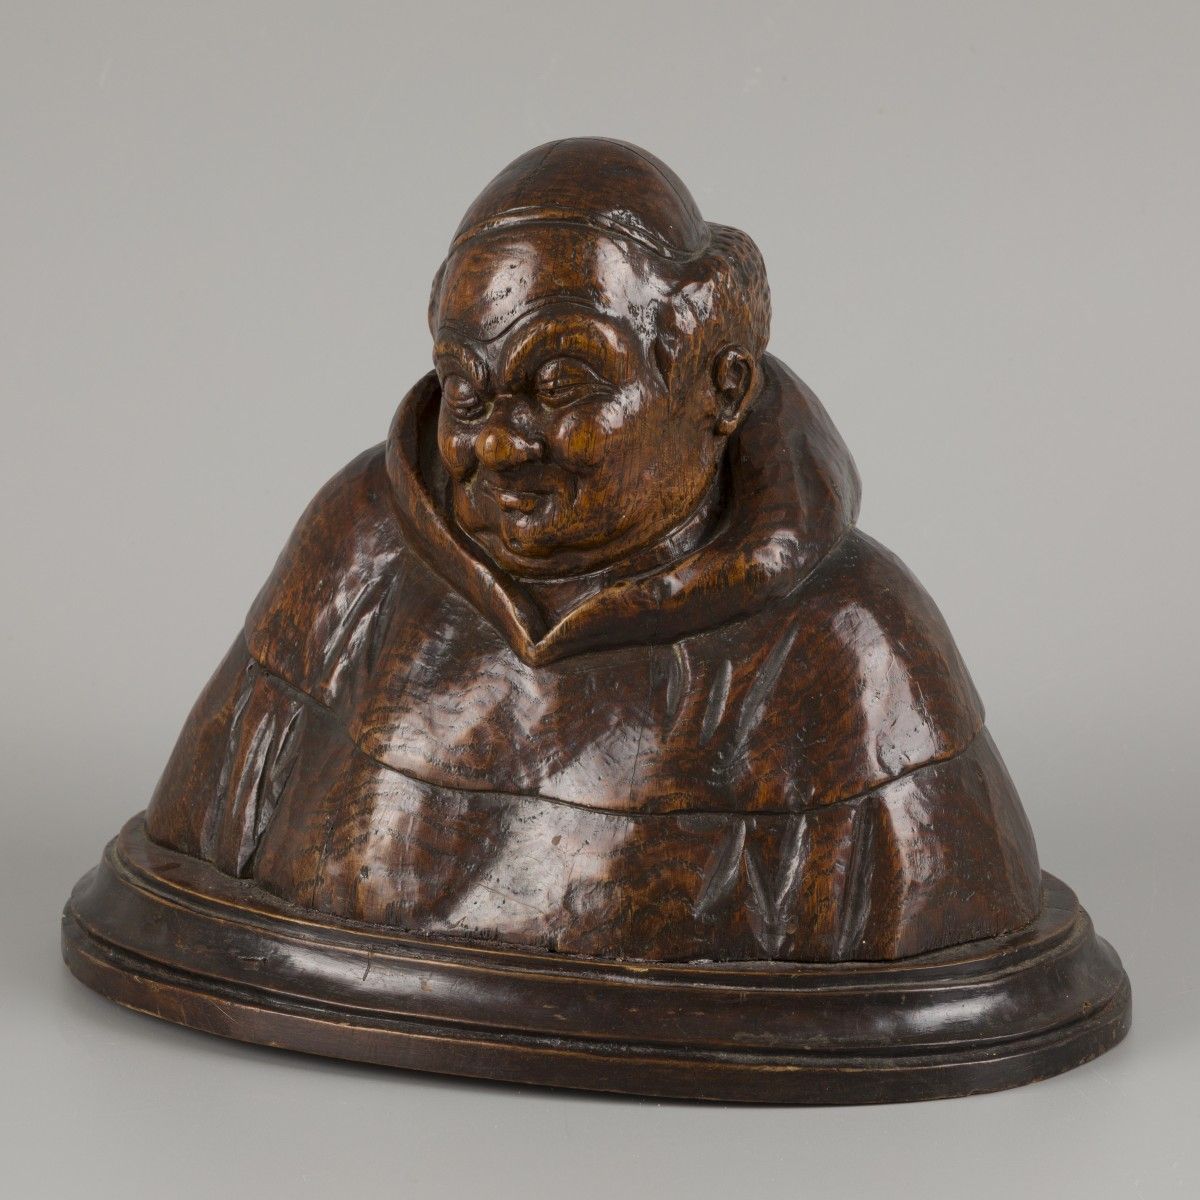 A wooden bust of a happy monk. Signiert mit "F. Parpan" (verso). H. 28 cm. Schät&hellip;